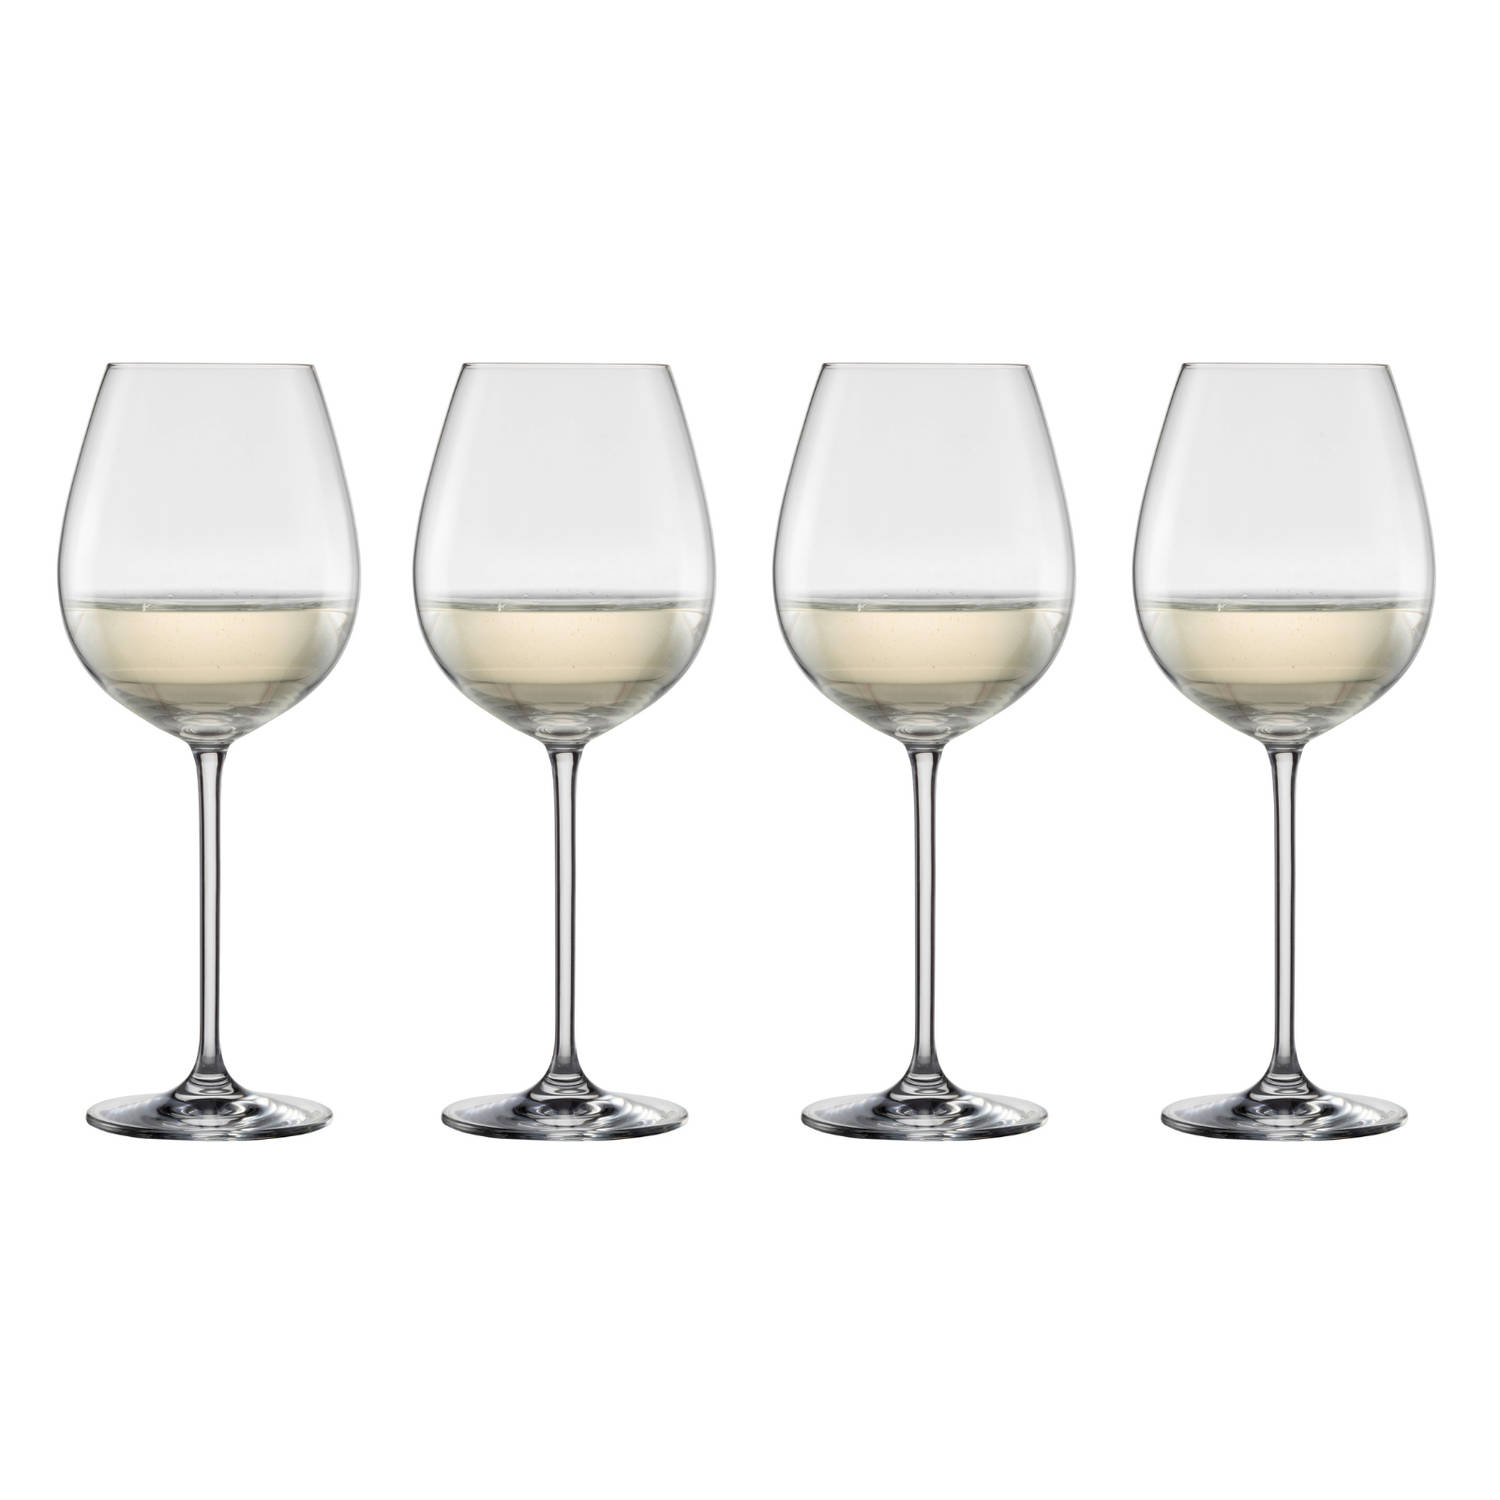 Schott Zwiesel Vinos Allround wijnglas 1 0.613Ltr set van 4